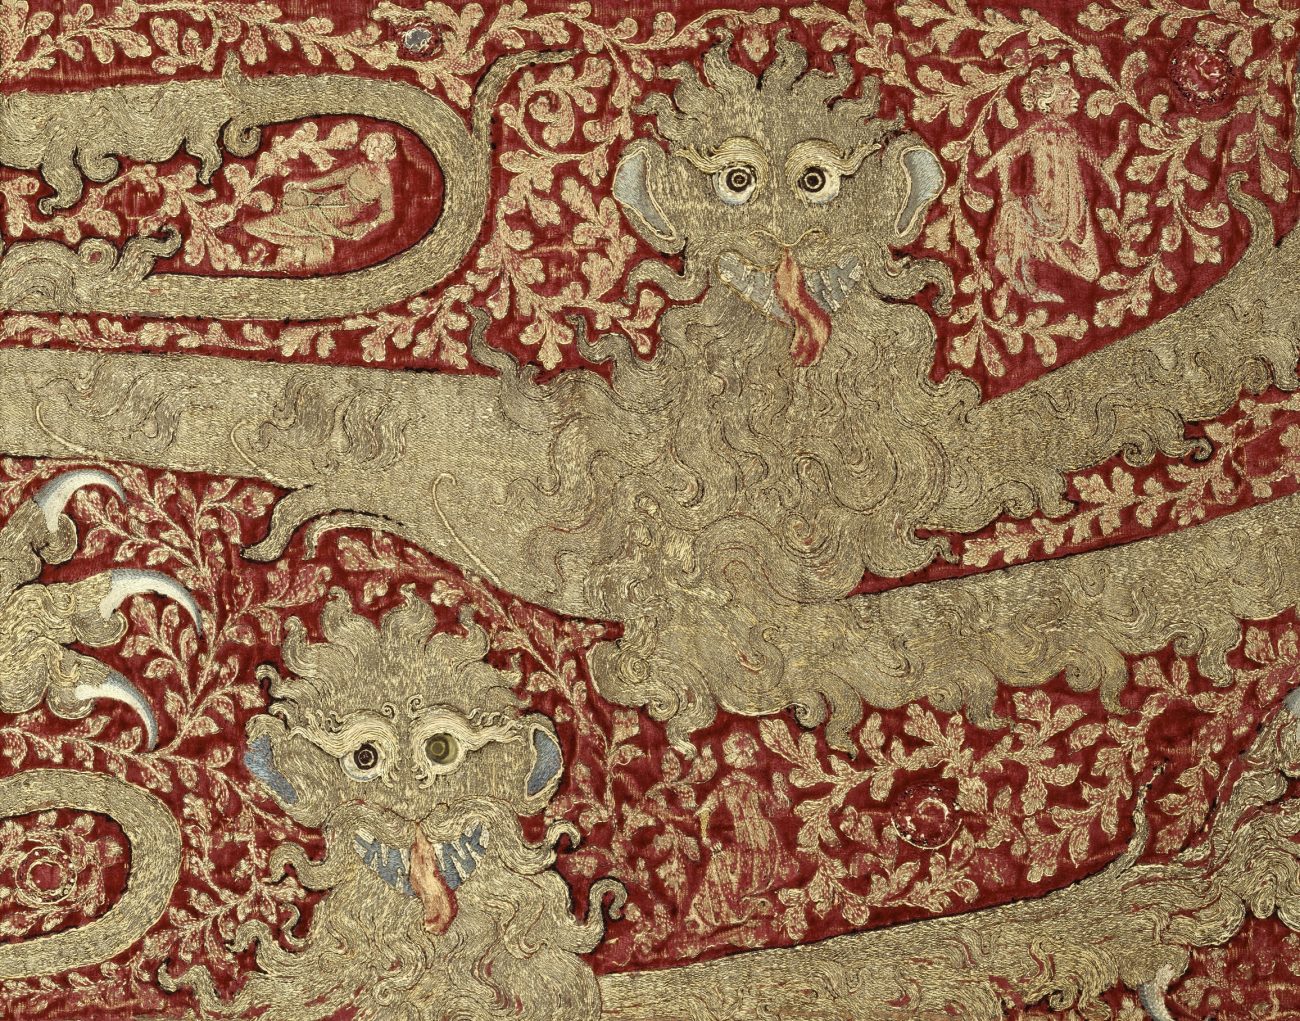 Opus anglicanum - Borduurwerk van luipaarden, gemaakt voor Edward III van Engeland - Museum van Cluny, Nationaal Museum van de Middeleeuwen, Parijs. - Handerkwereld